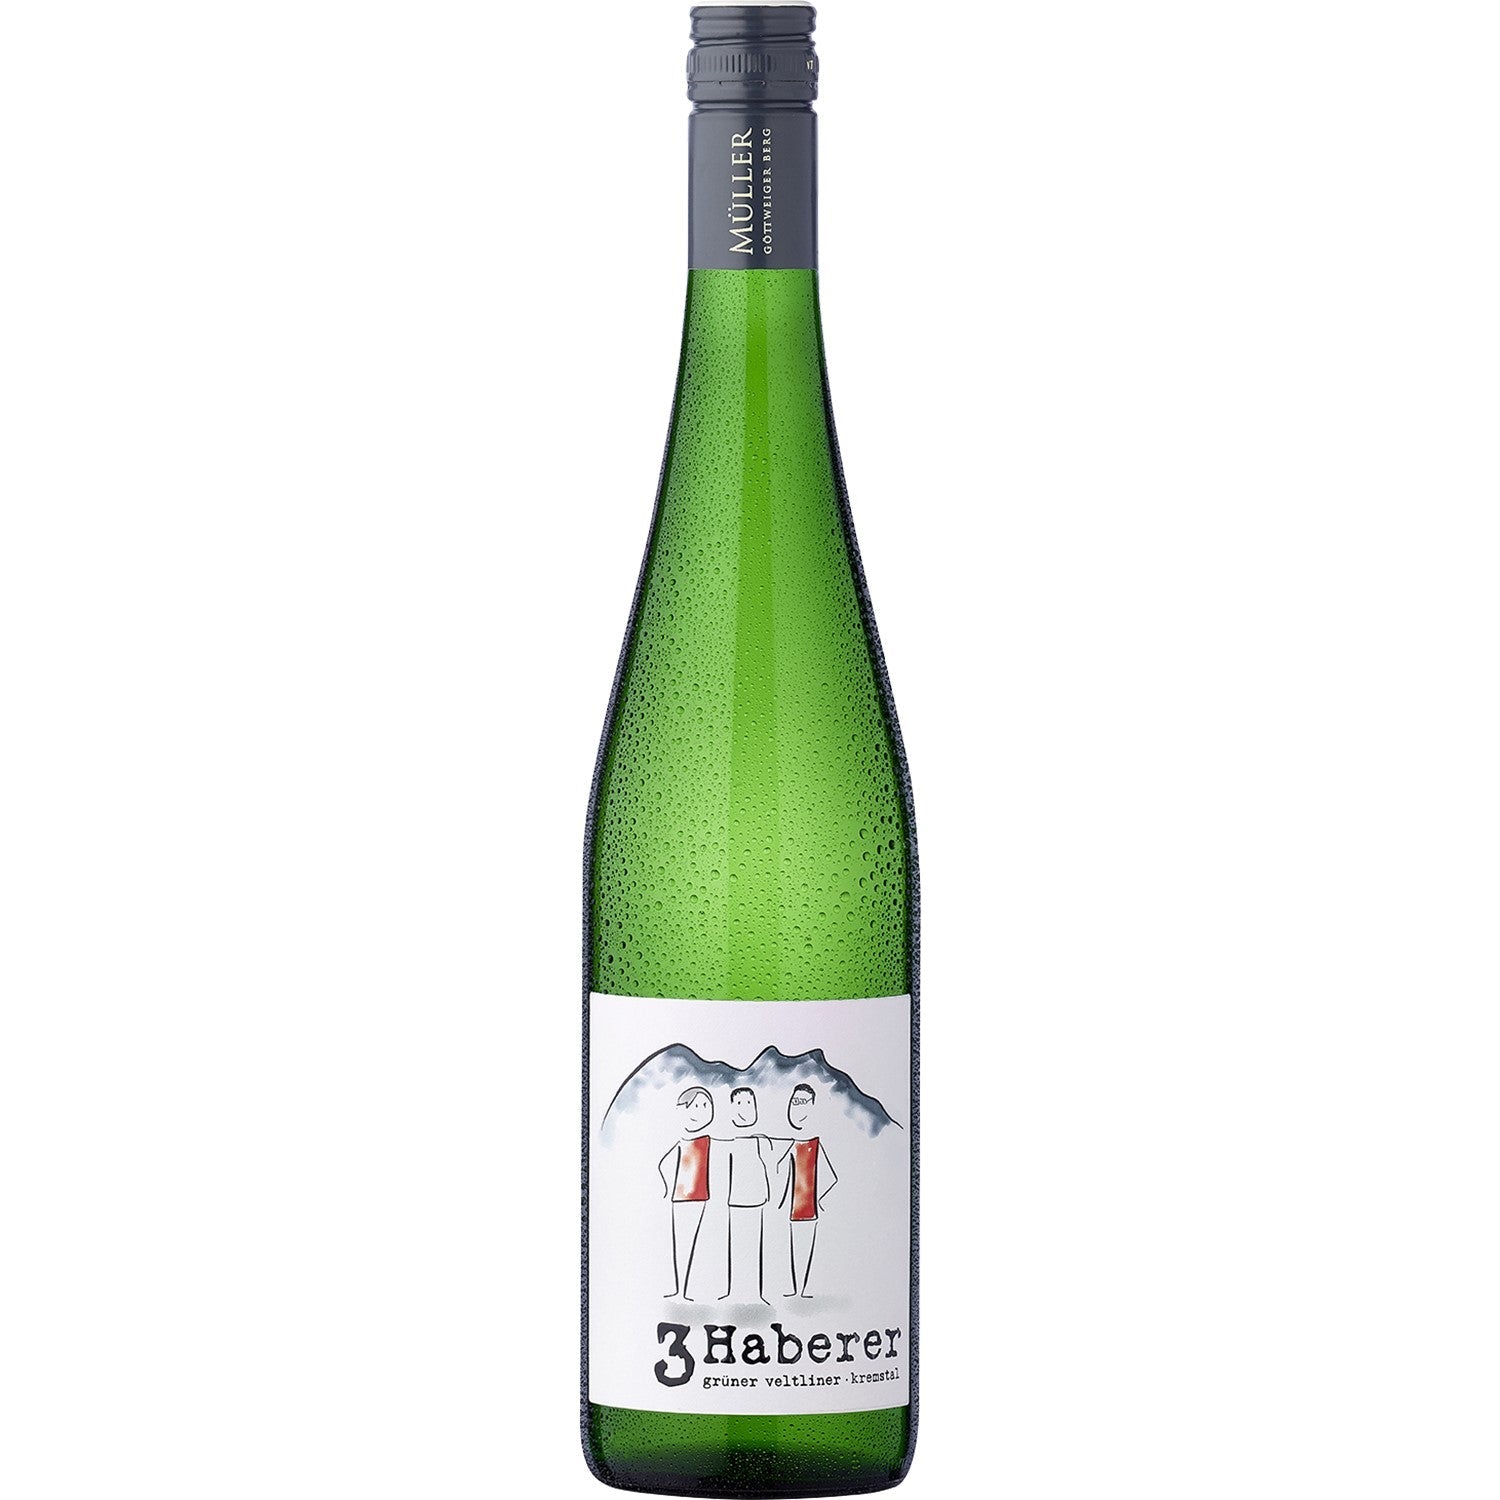 3 Haberer Grüner Veltliner Kremstal DAC Weißwein Wein trocken Österreich (6 x 0.75l) - Versanel - Wein